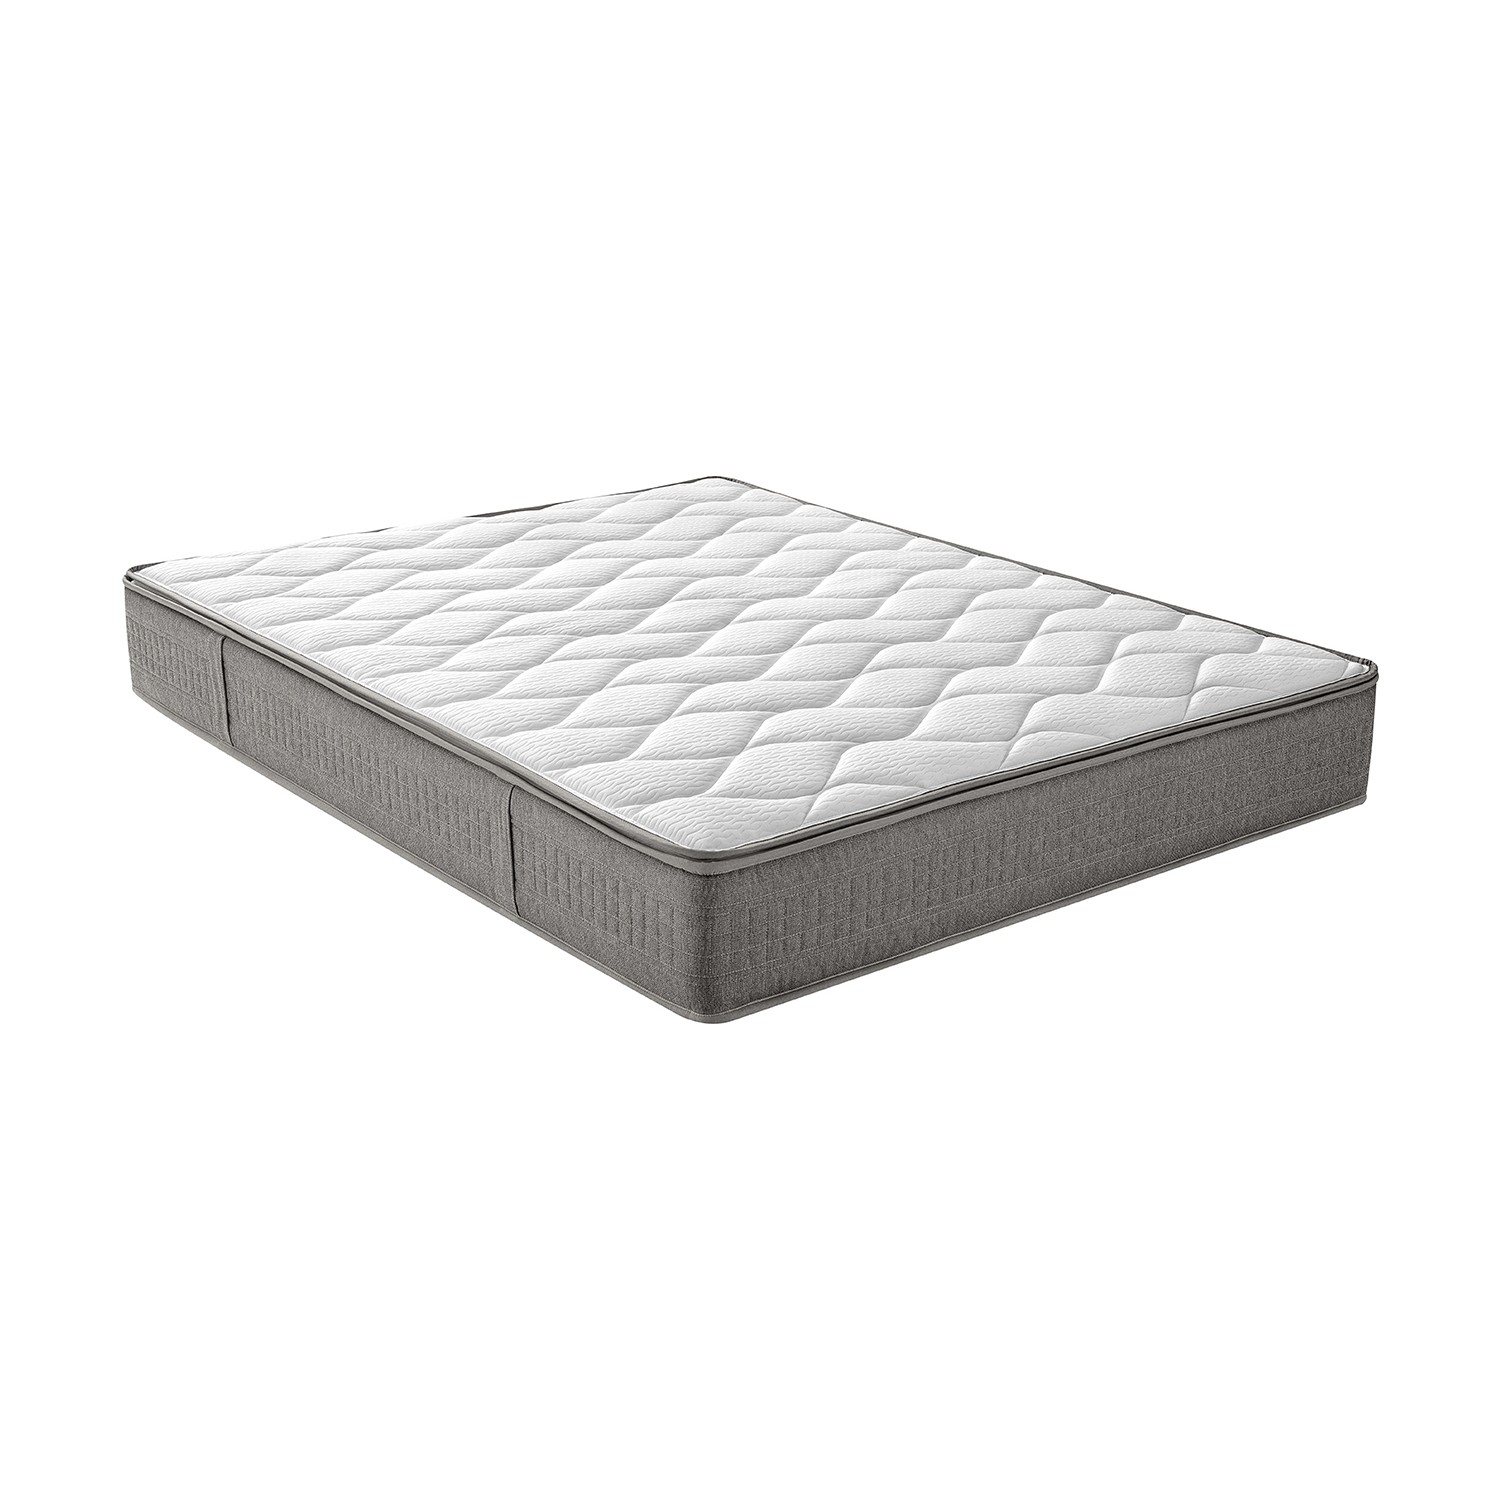 Yataş / Selena SOHO Yaylı Yatak (Çift Kişilik 160X200 cm) Fiyatı